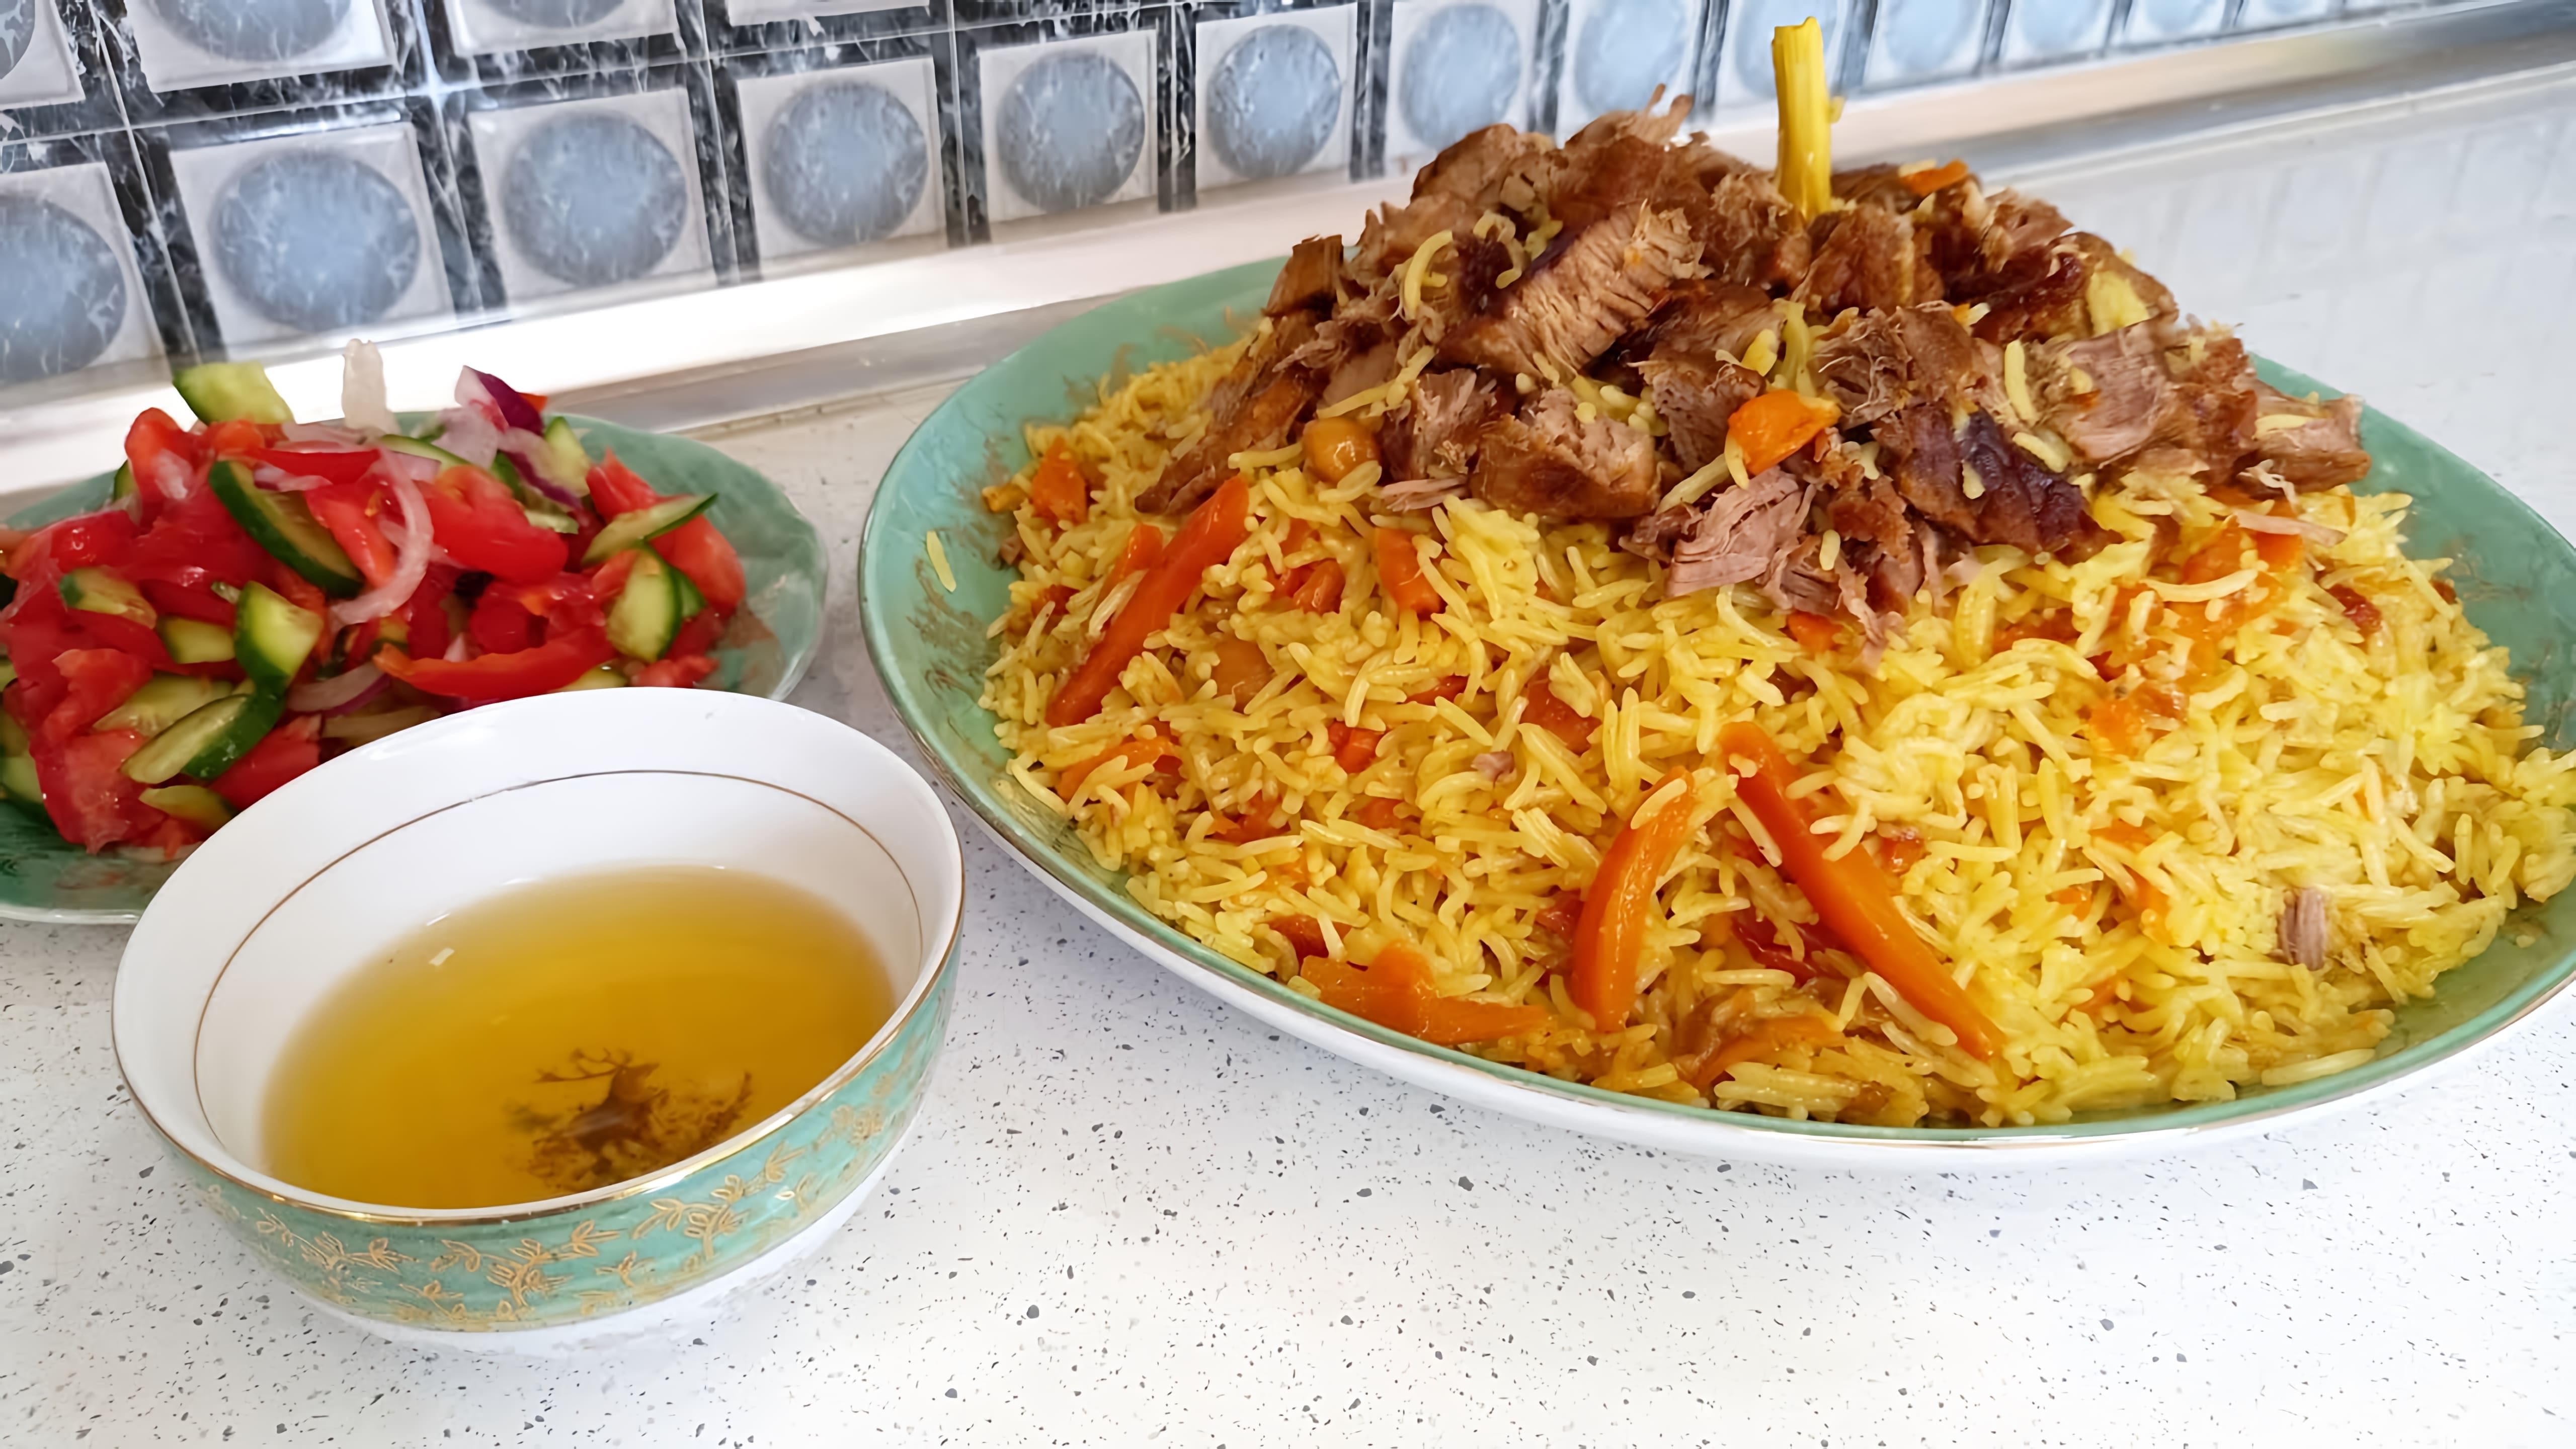 Настоящий Узбекский плов из говядины - это блюдо, которое готовится по традиционному рецепту, передаваемому из поколения в поколение